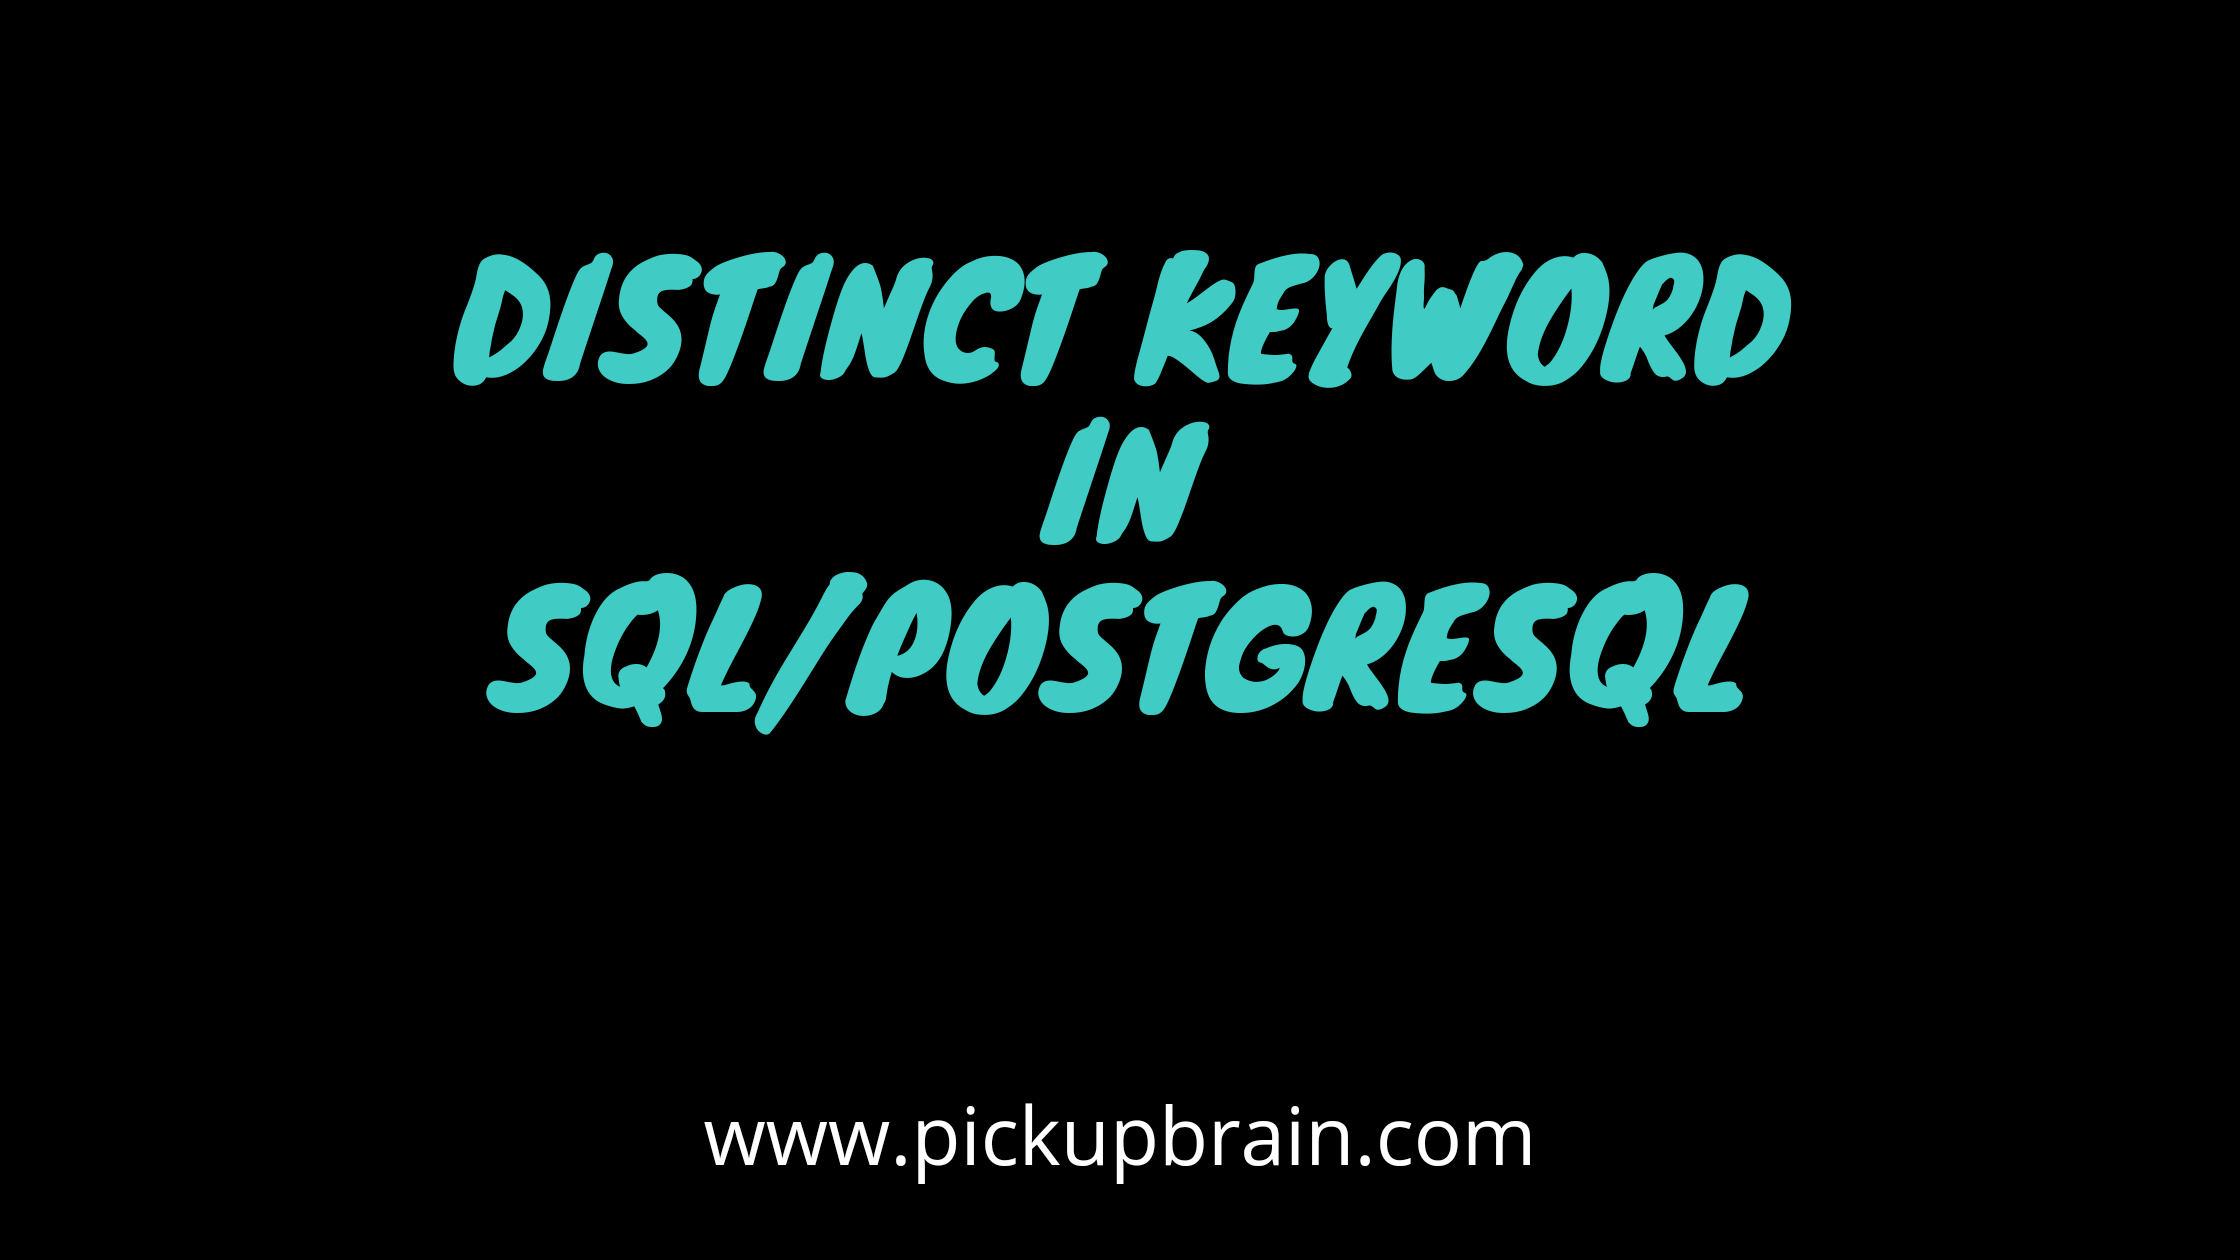 Distinct Keyword in SQL